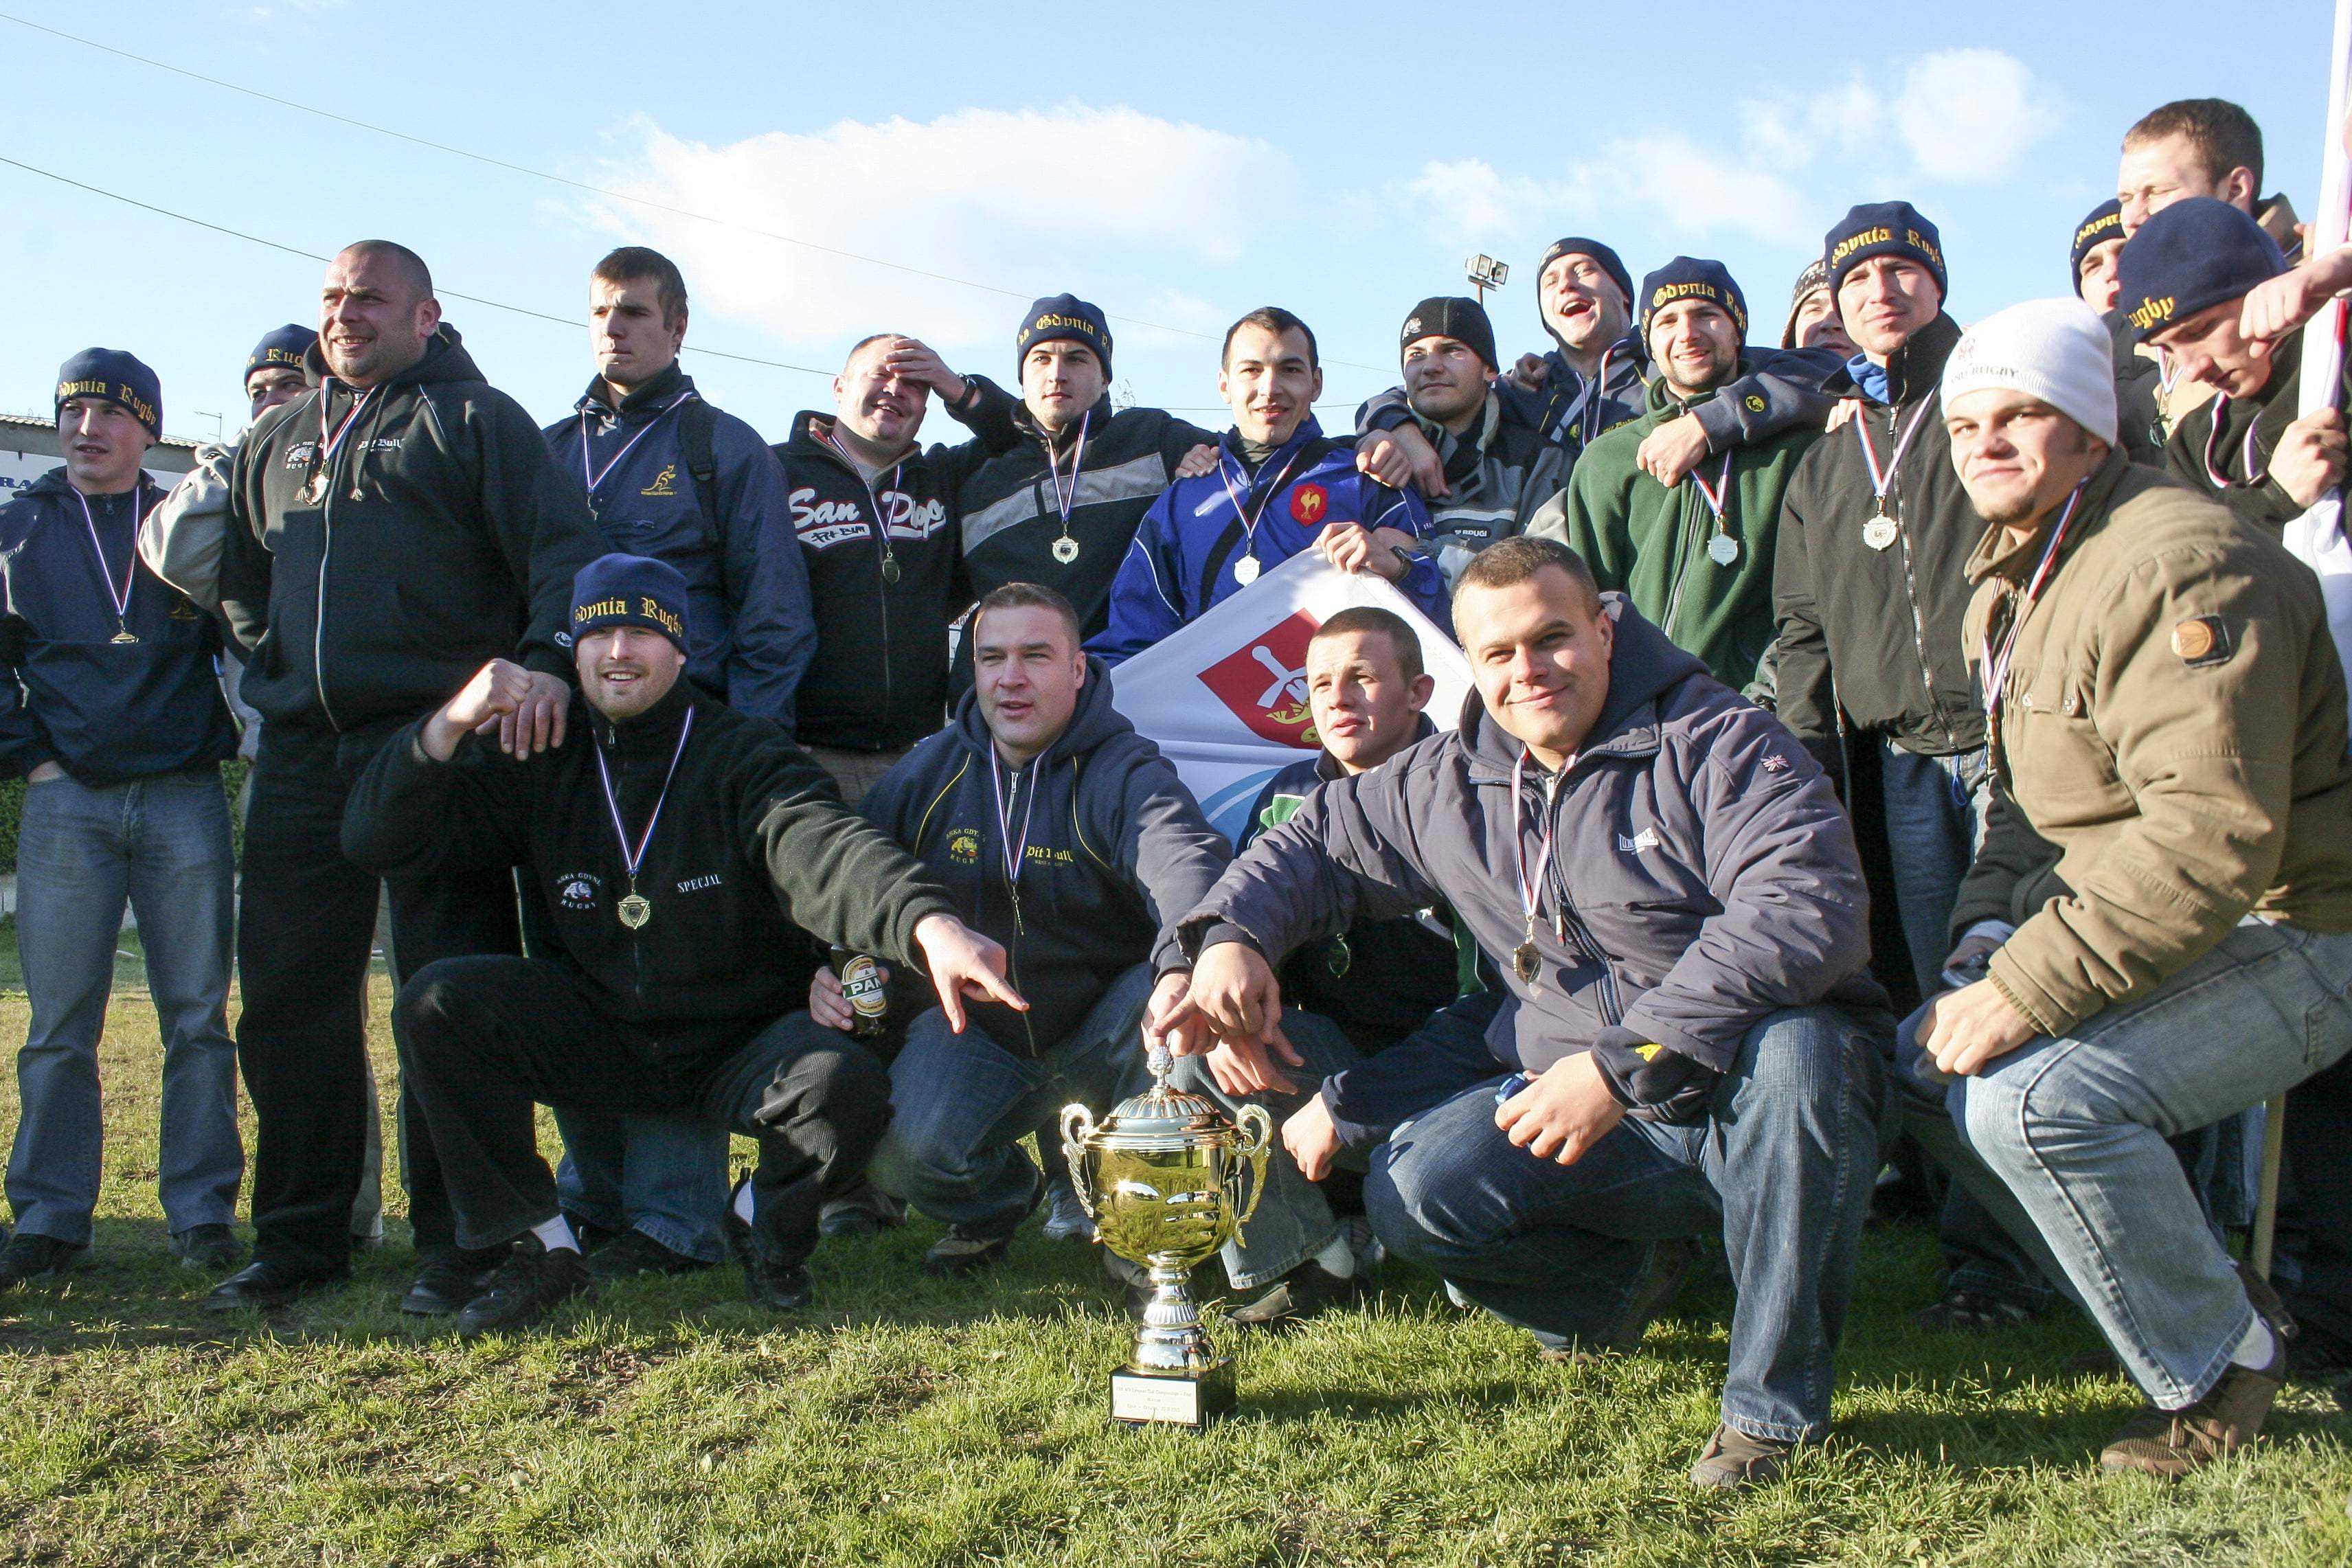 puchar europy mistrzow krajowych rugby 18-20.11.2005 split / chorwacja fot slawomir ptasznik s.ptasznik@wp.pl tel 880 499 122